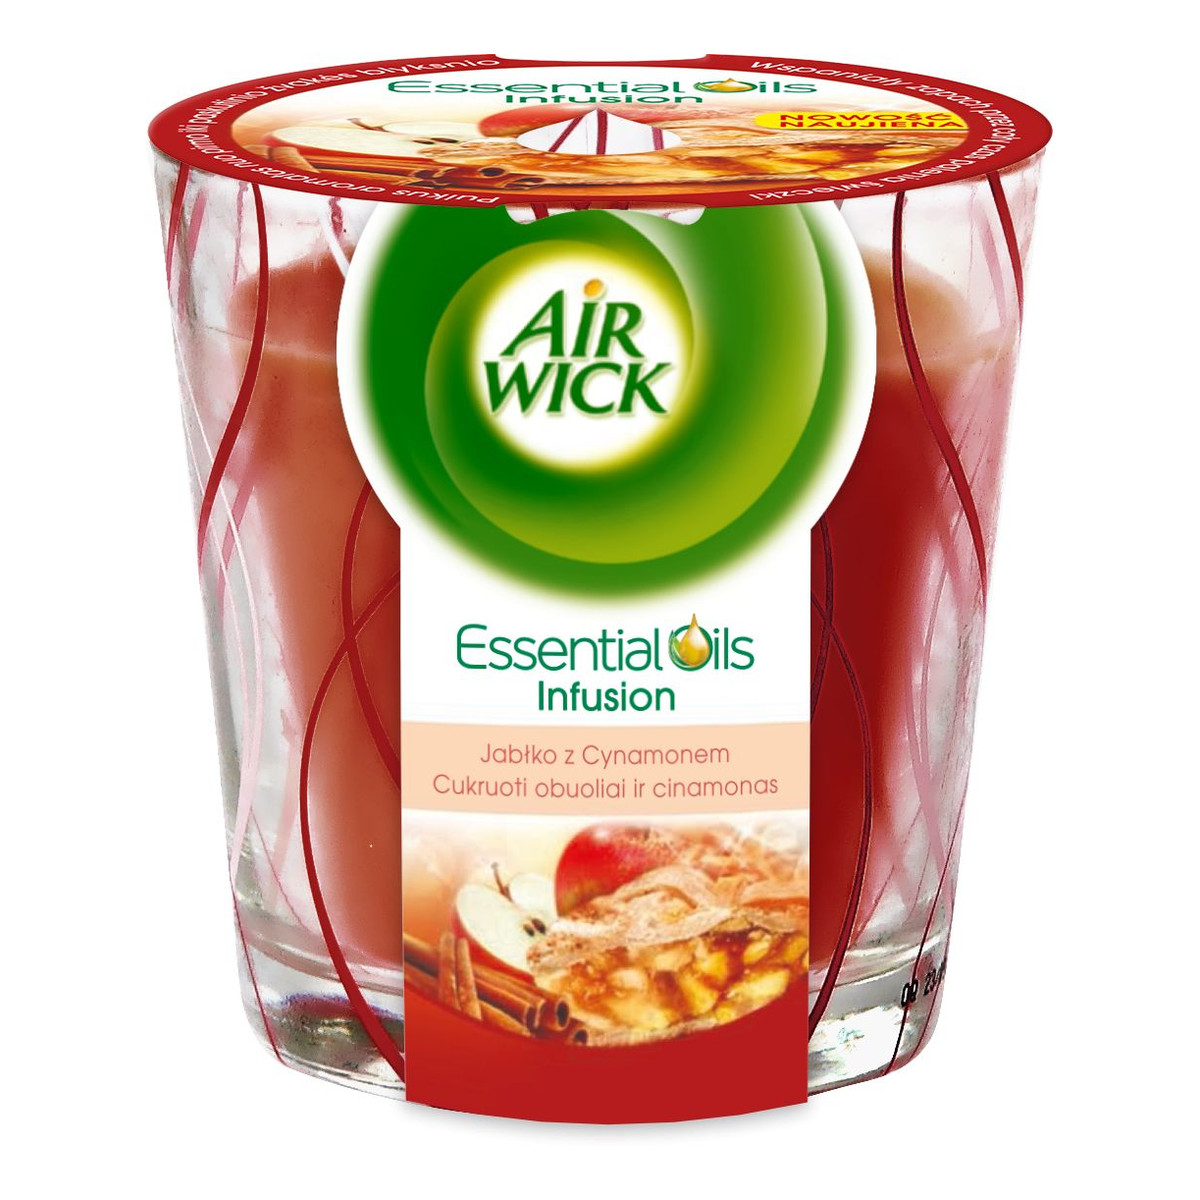 Air Wick Essential Oils Infusion świeczka zapachowa Jabłko z Cynamonem 105g